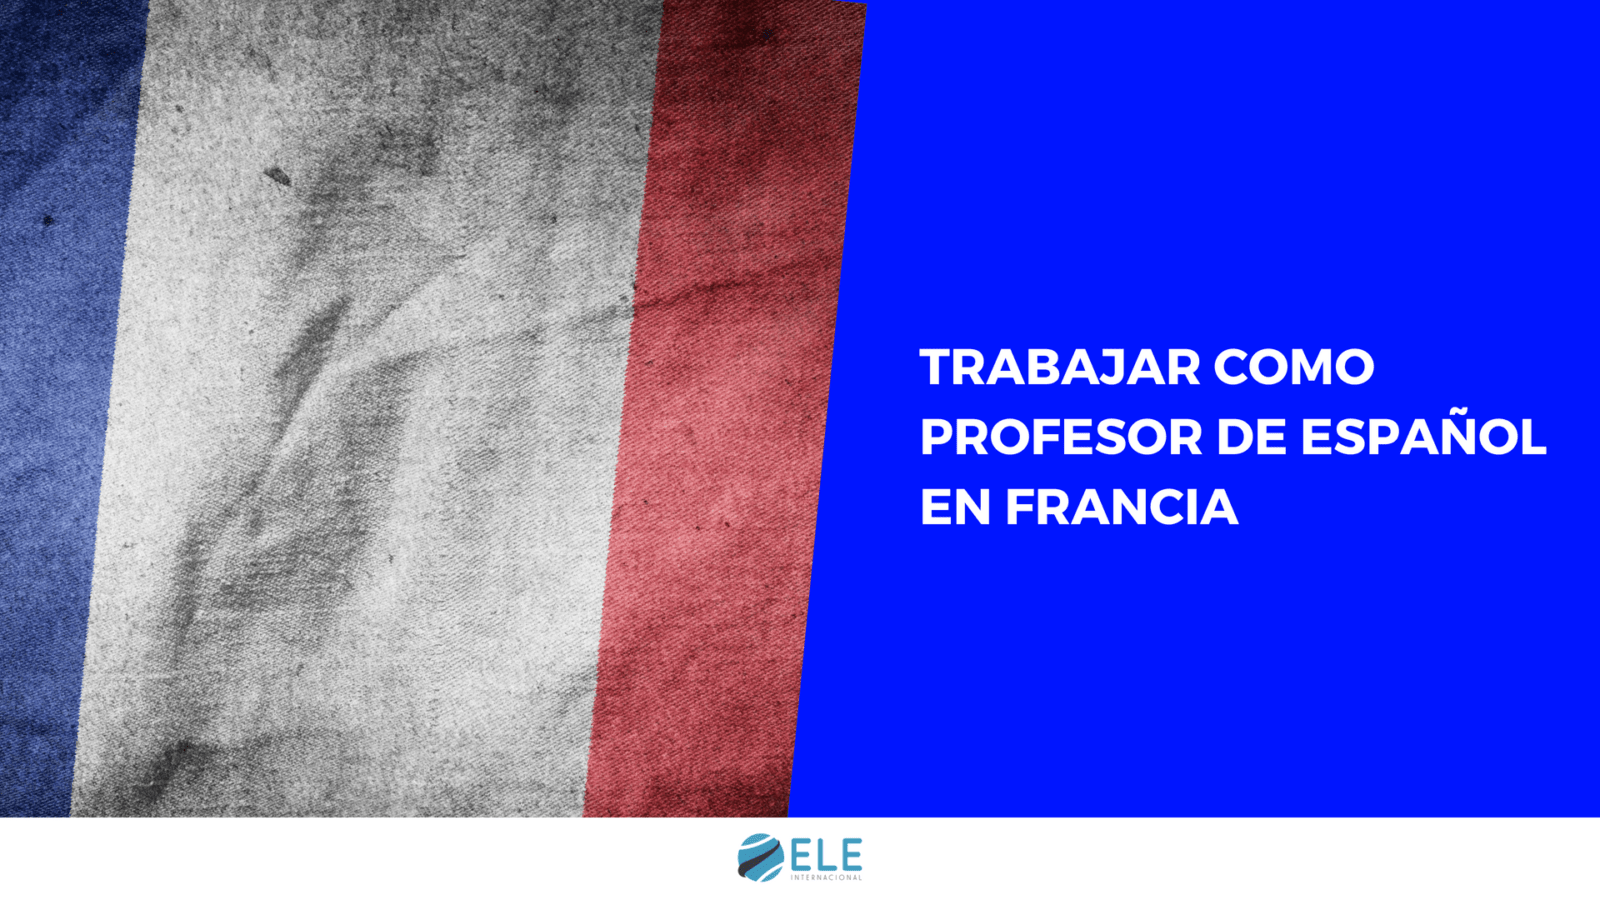 Guía para trabajar como profesor de español en Francia con recursos útiles. #spanishteacher #francia #clasedeele